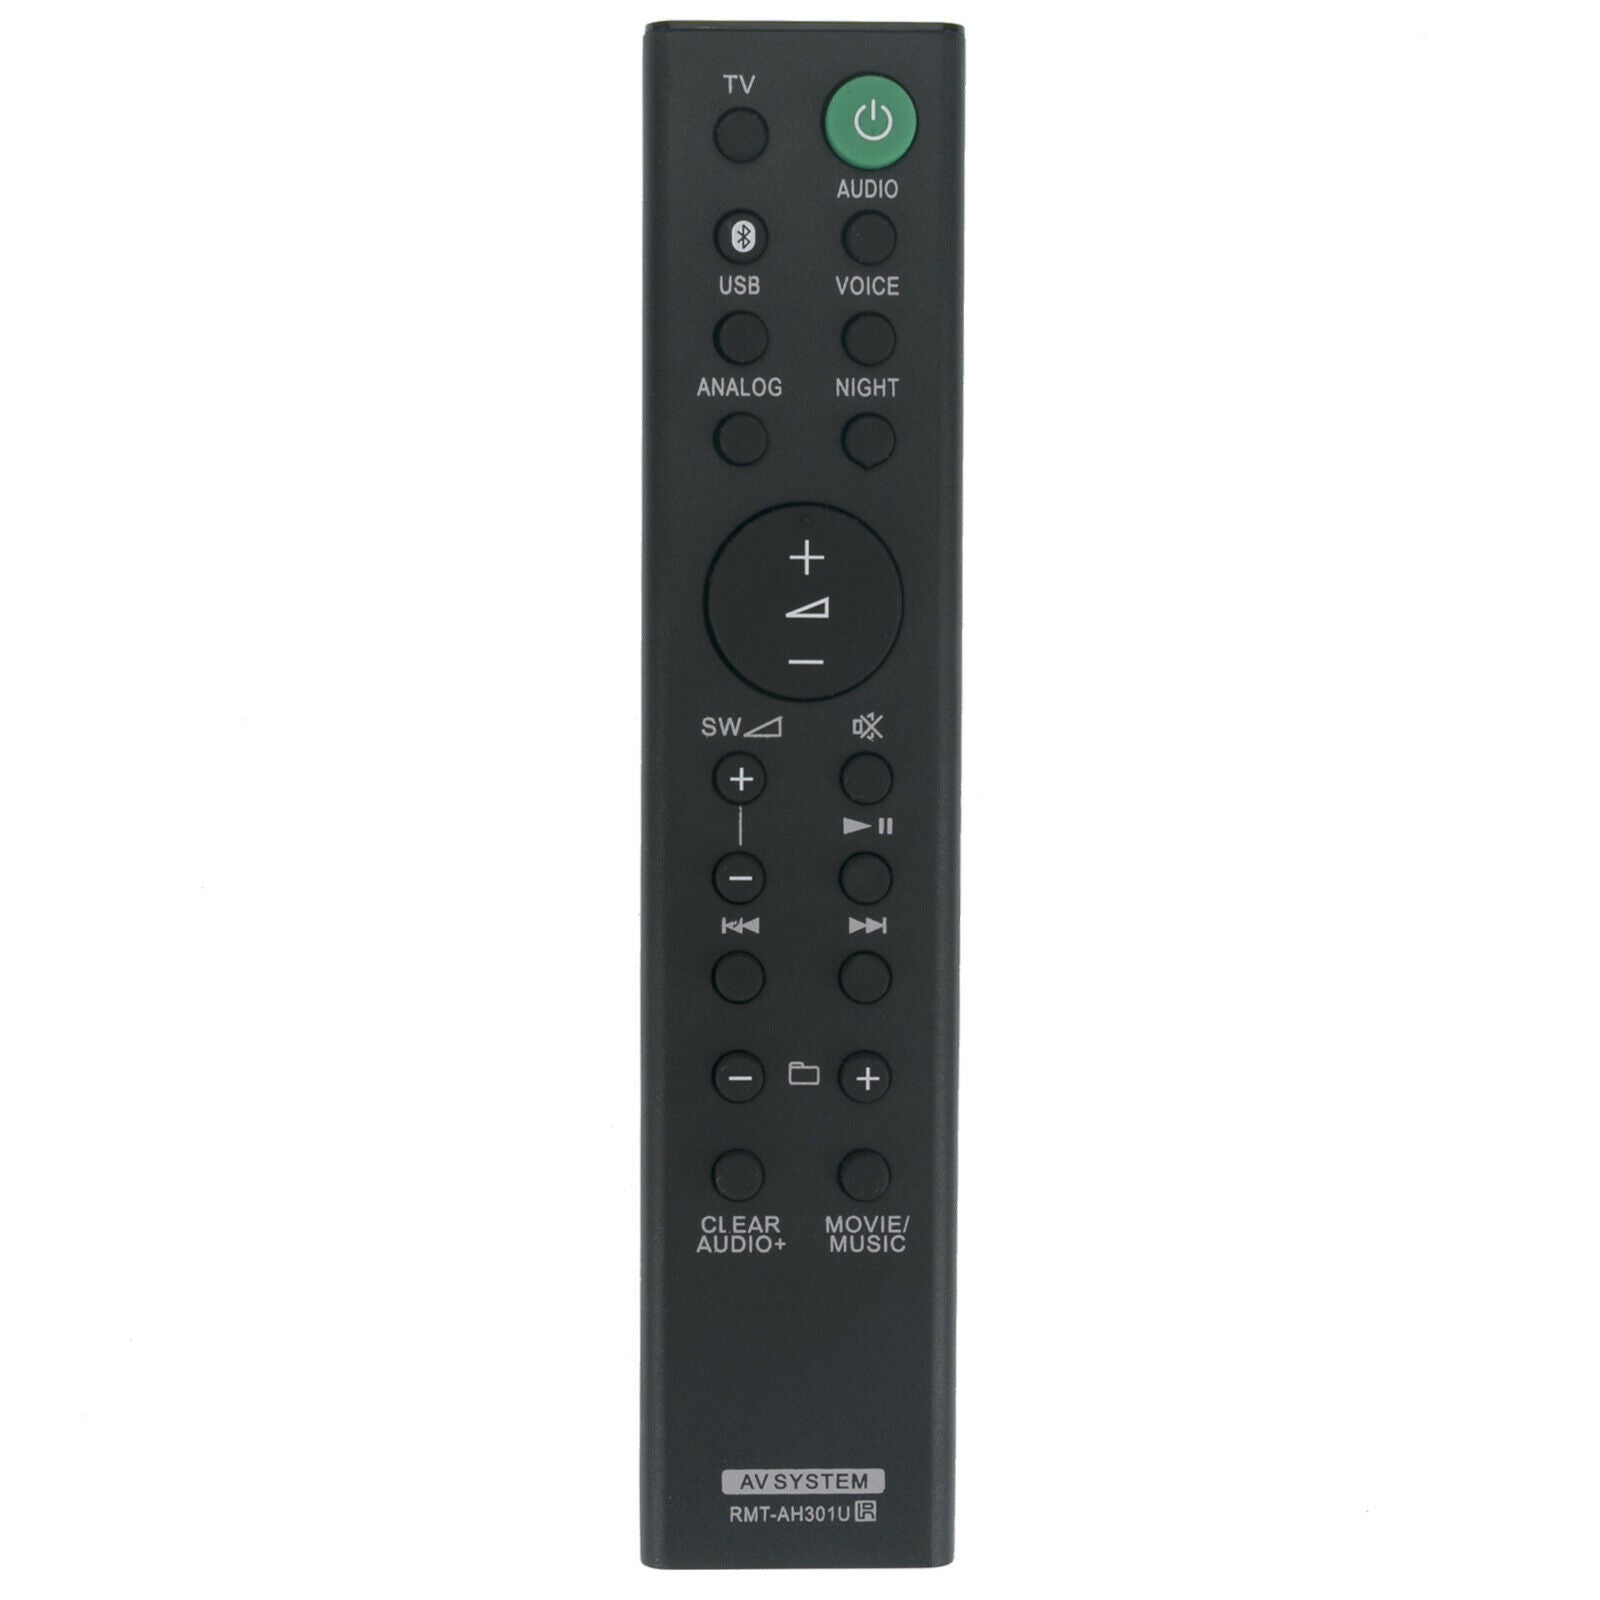 RMT-AH301U Replacement Remote Control for Sony Sound Bar HTMT300 HTMT301 HT-MT300